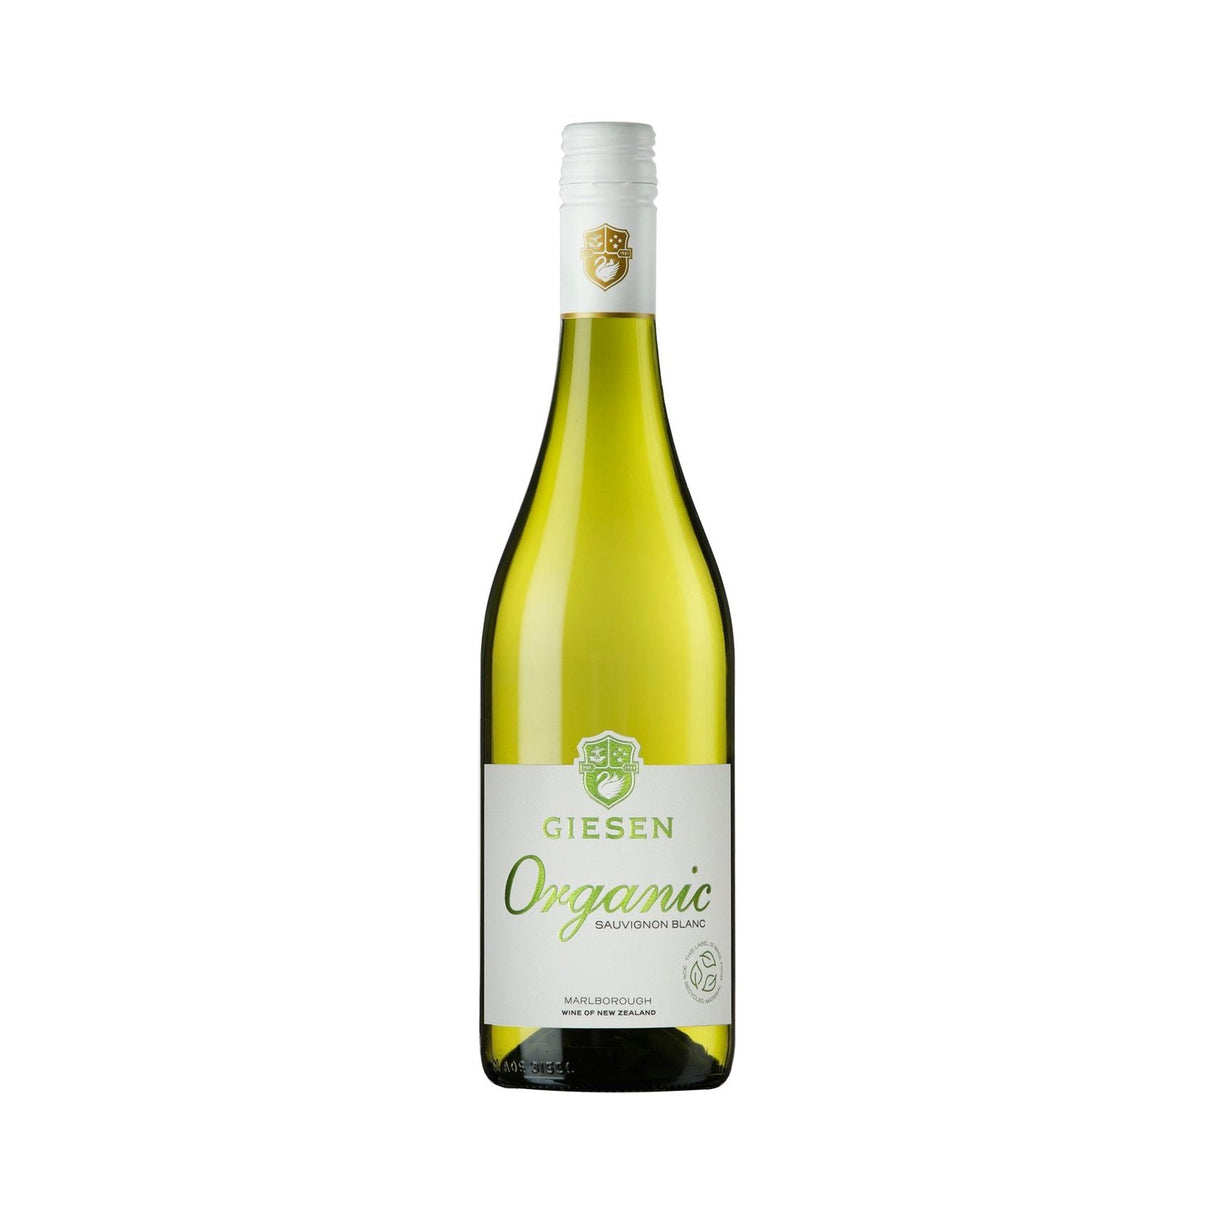 Giesen Organic Sauvignon Blanc,  Marlborough 2021 (12 bottles)